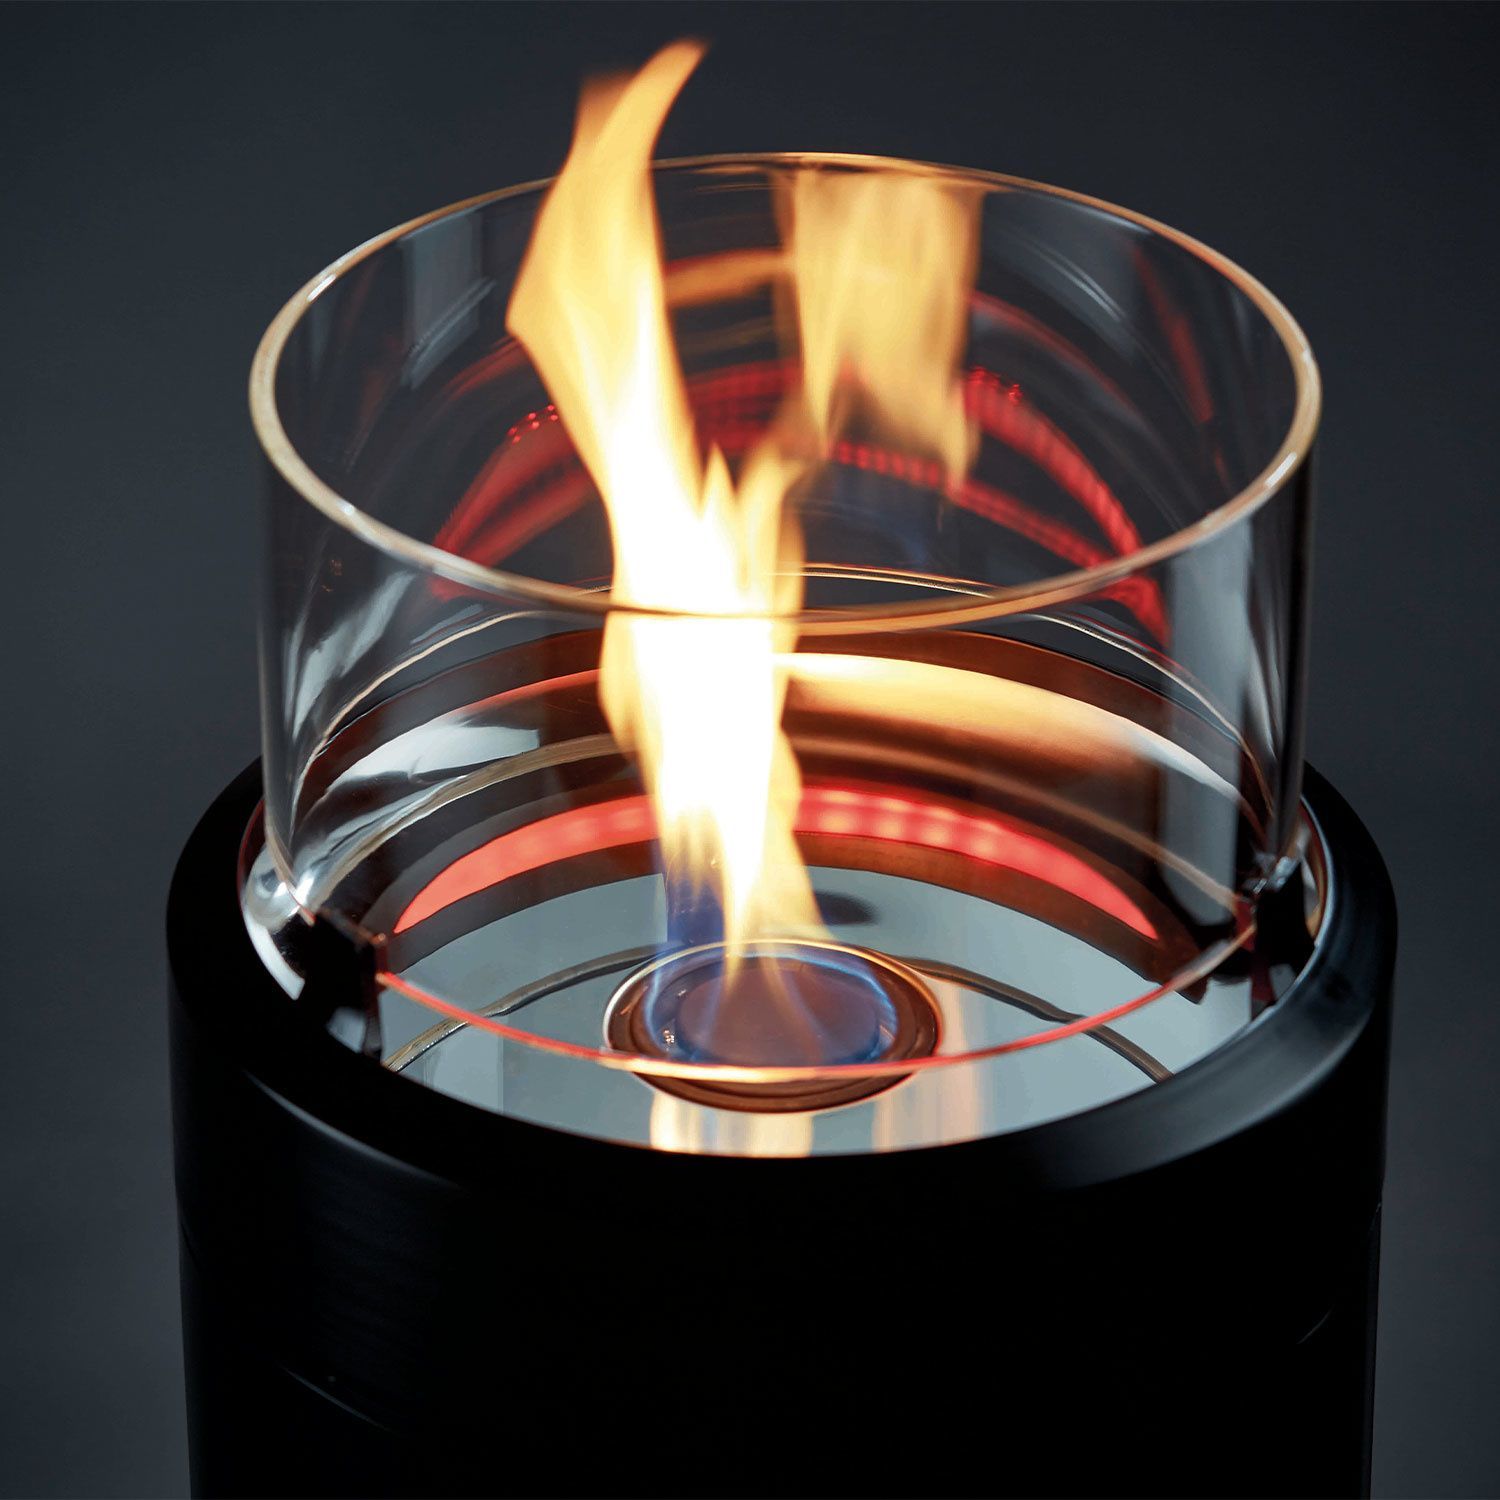 5nova flamme 07 01 2020 - Turn Don't Burn